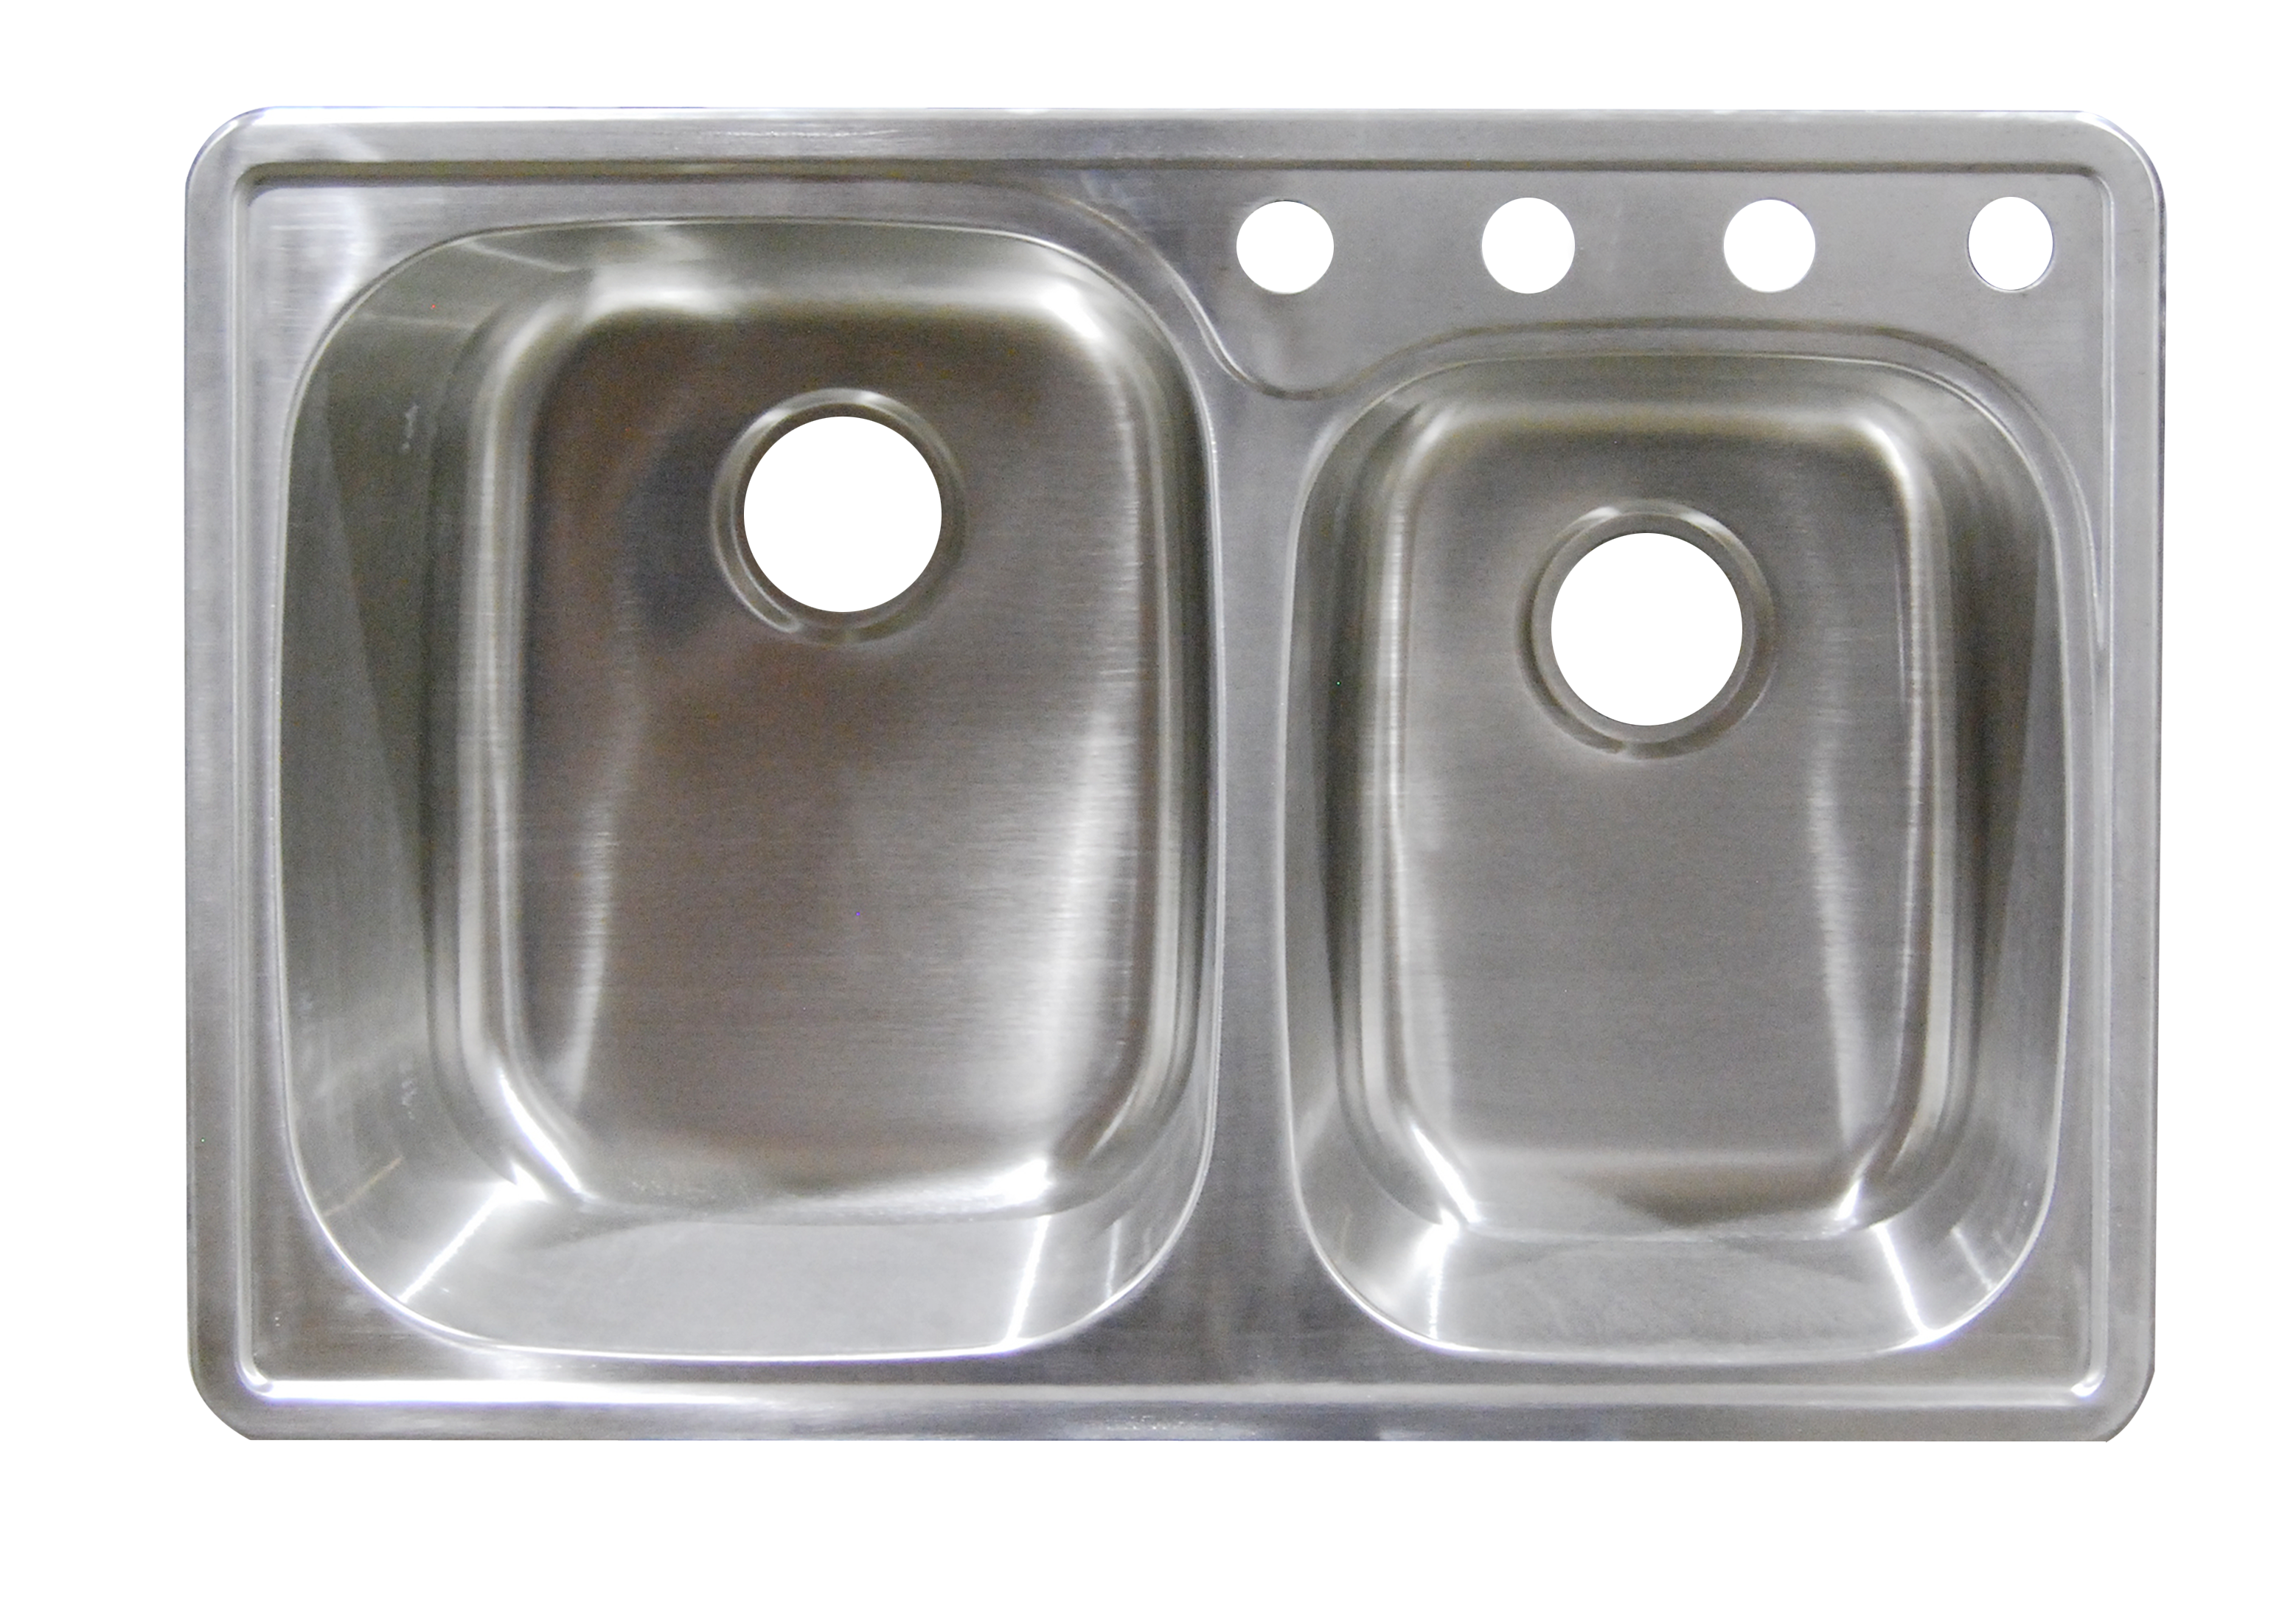 Steel Tap Stainless Top Sink Plumbing Fixtures Clipart